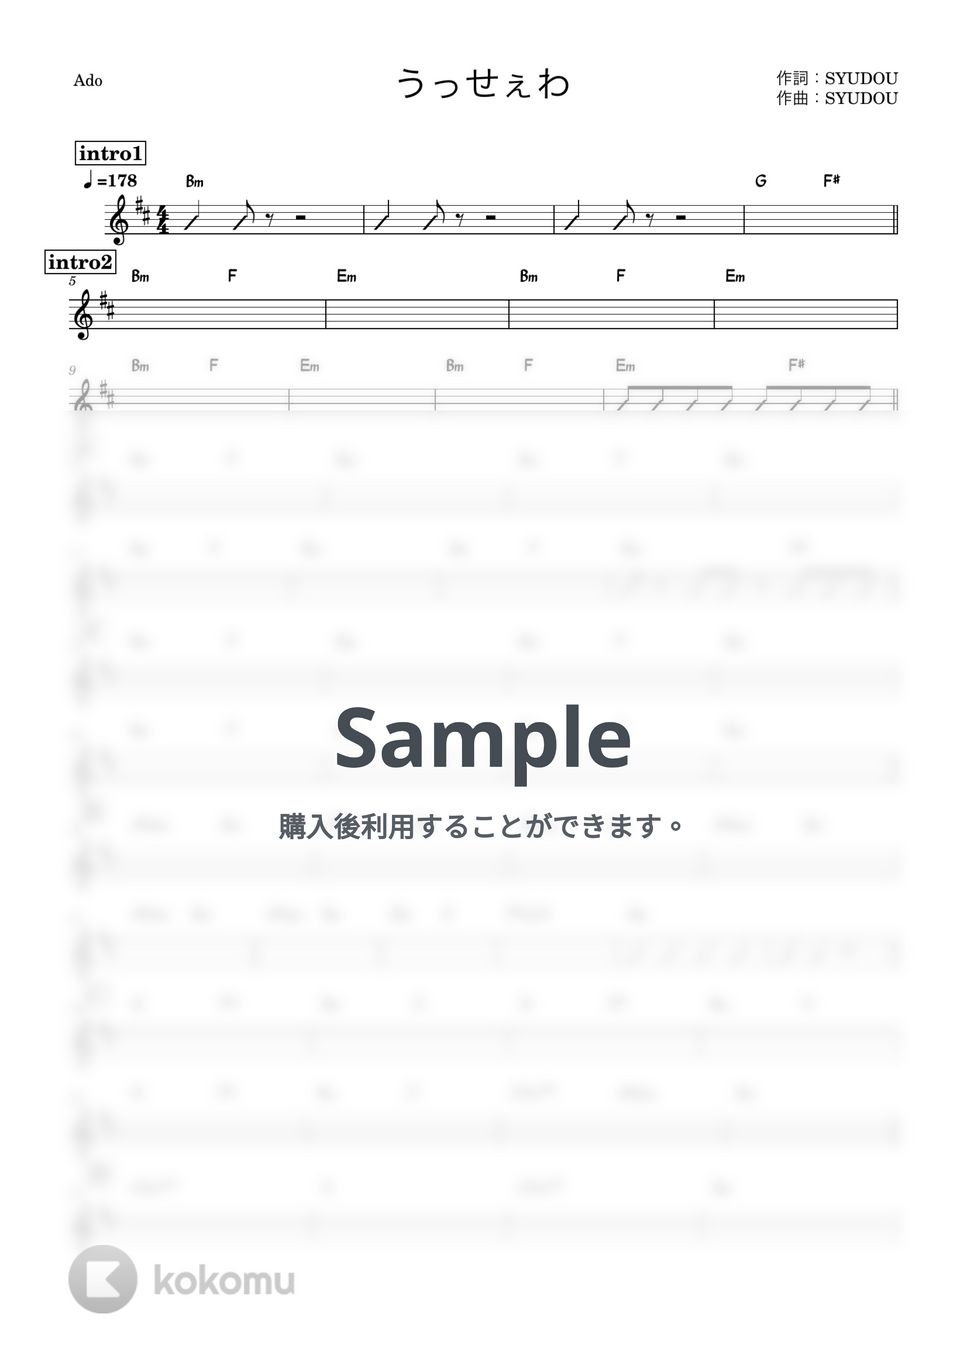 Ado - うっせぇわ (バンド用コード譜) by 箱譜屋